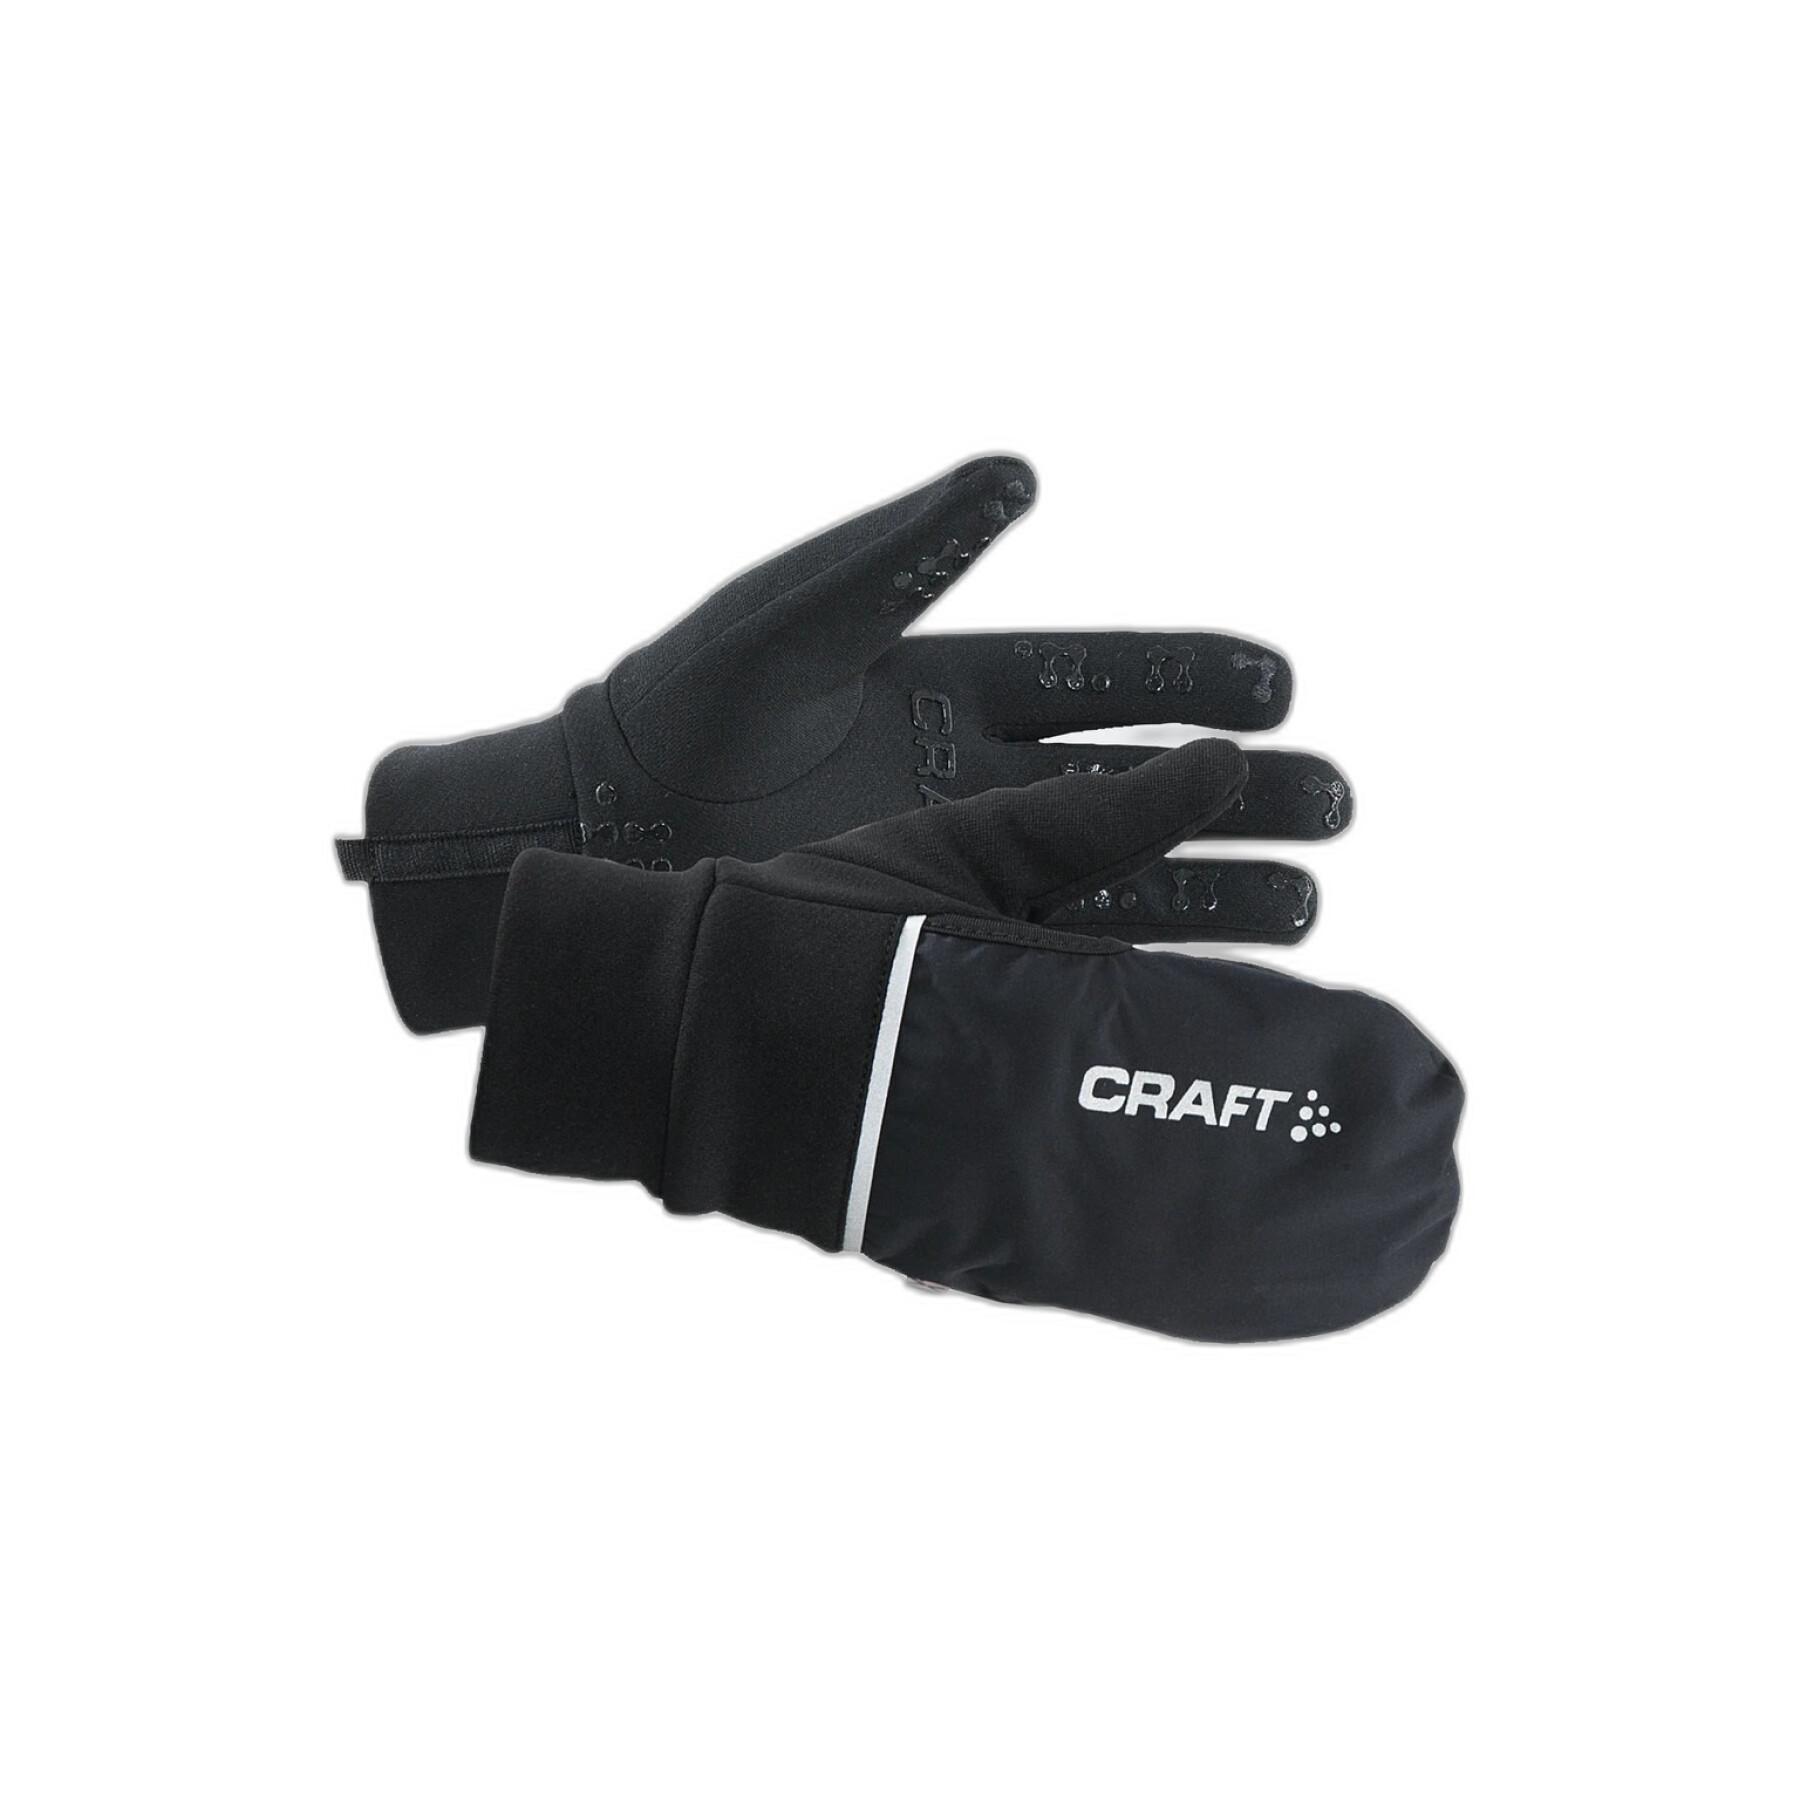 Handskar Craft hybrid weather